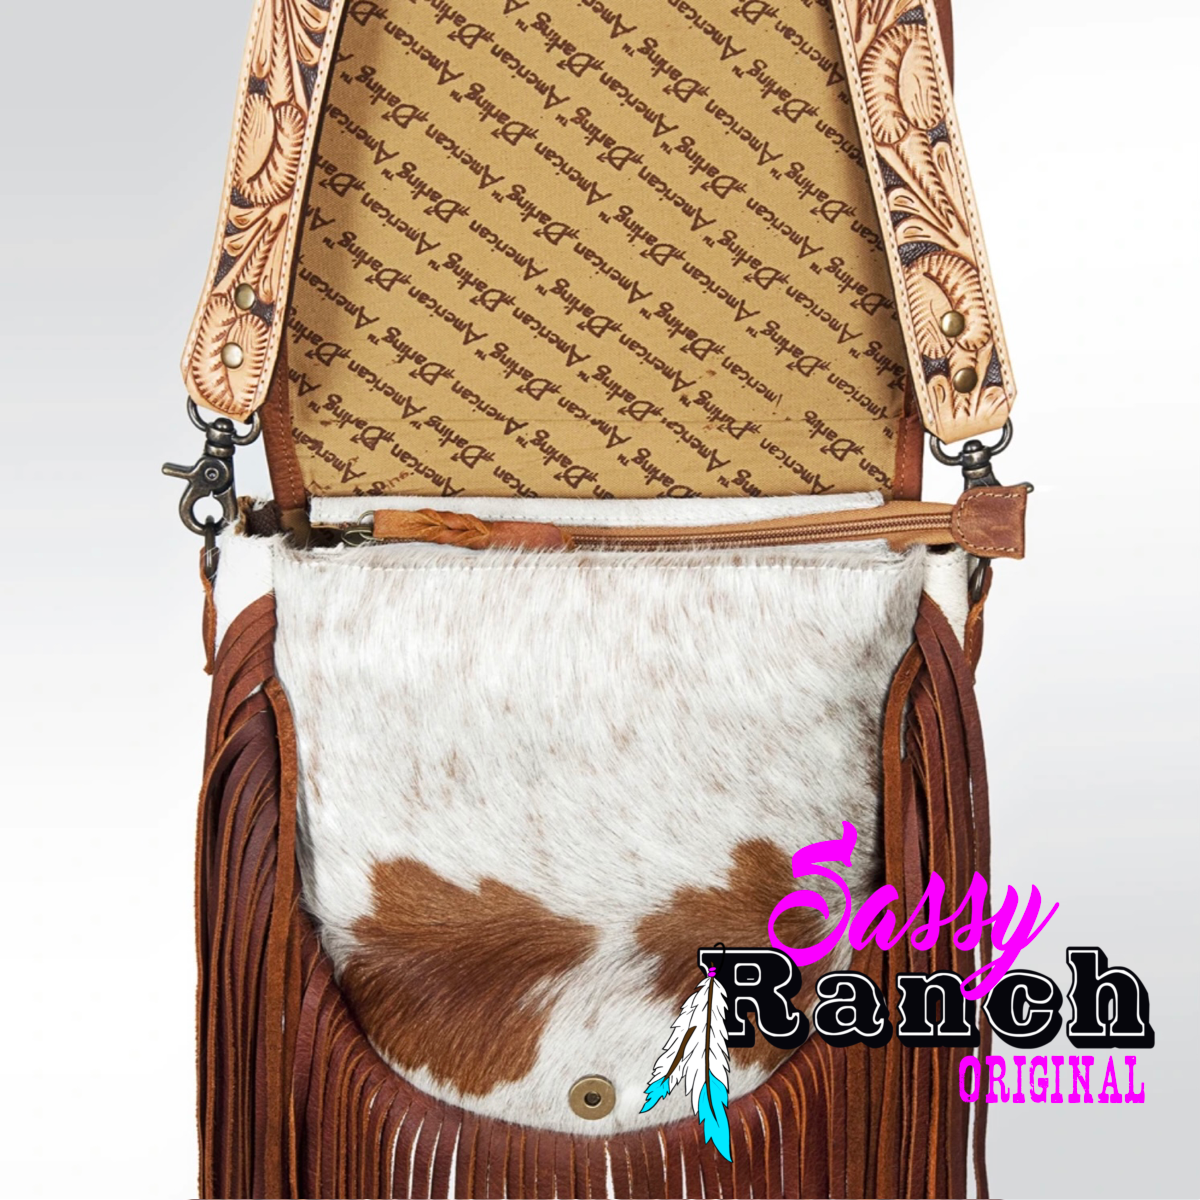 Women's Western Floral Tooled Leather Cowhide Shoulder Purse Handbag Fringe 18RTH17